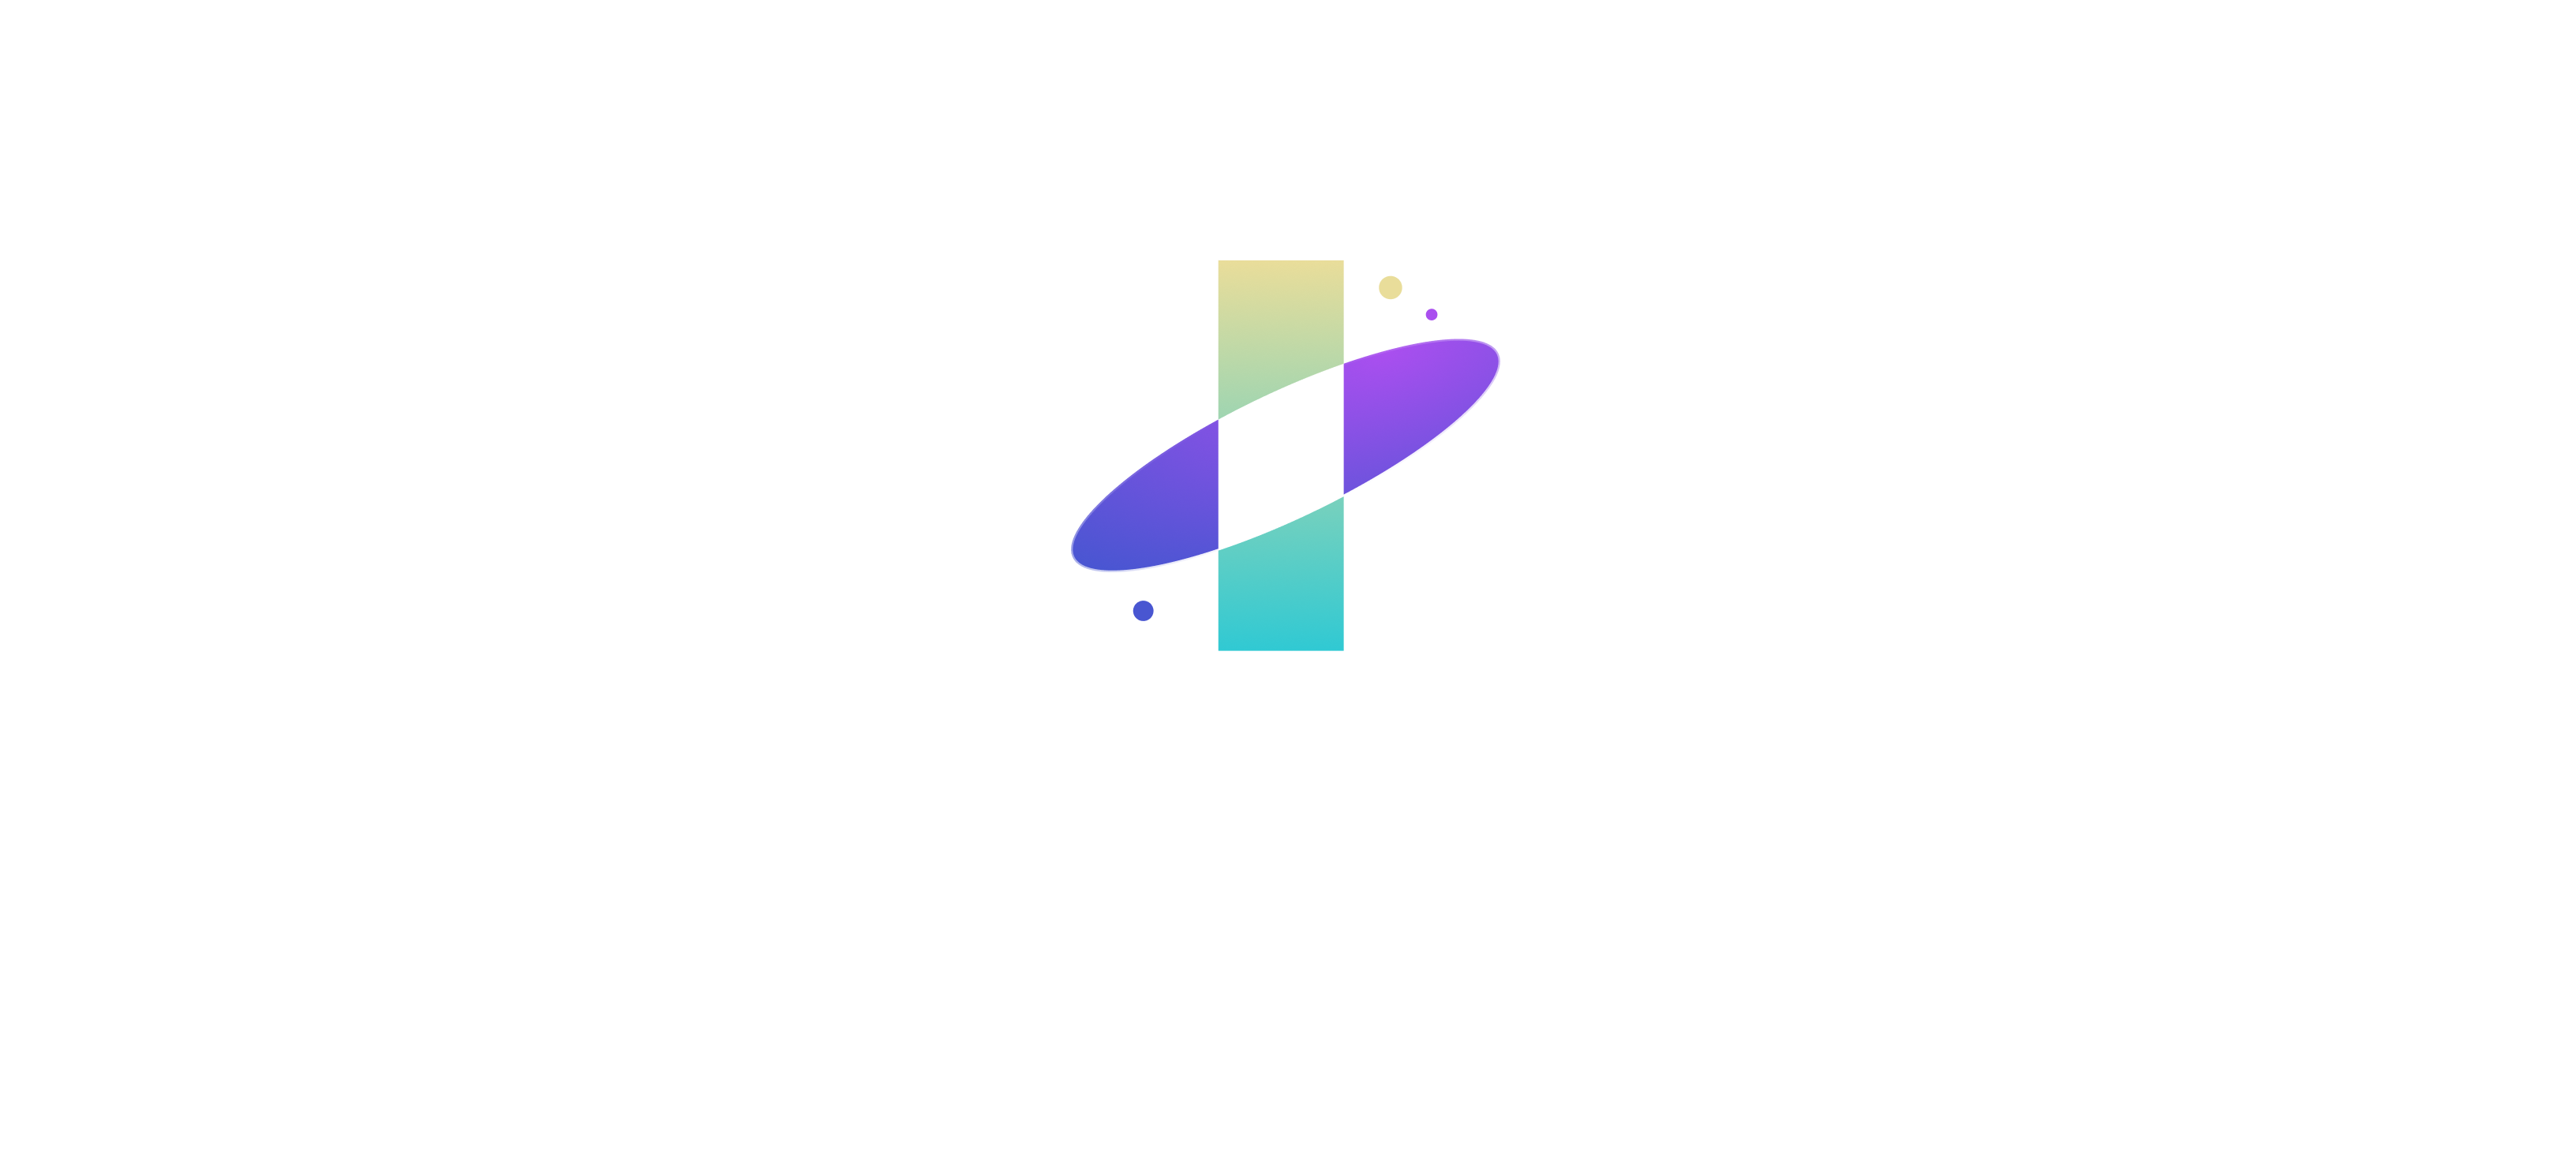 INTERSTELLAR logo